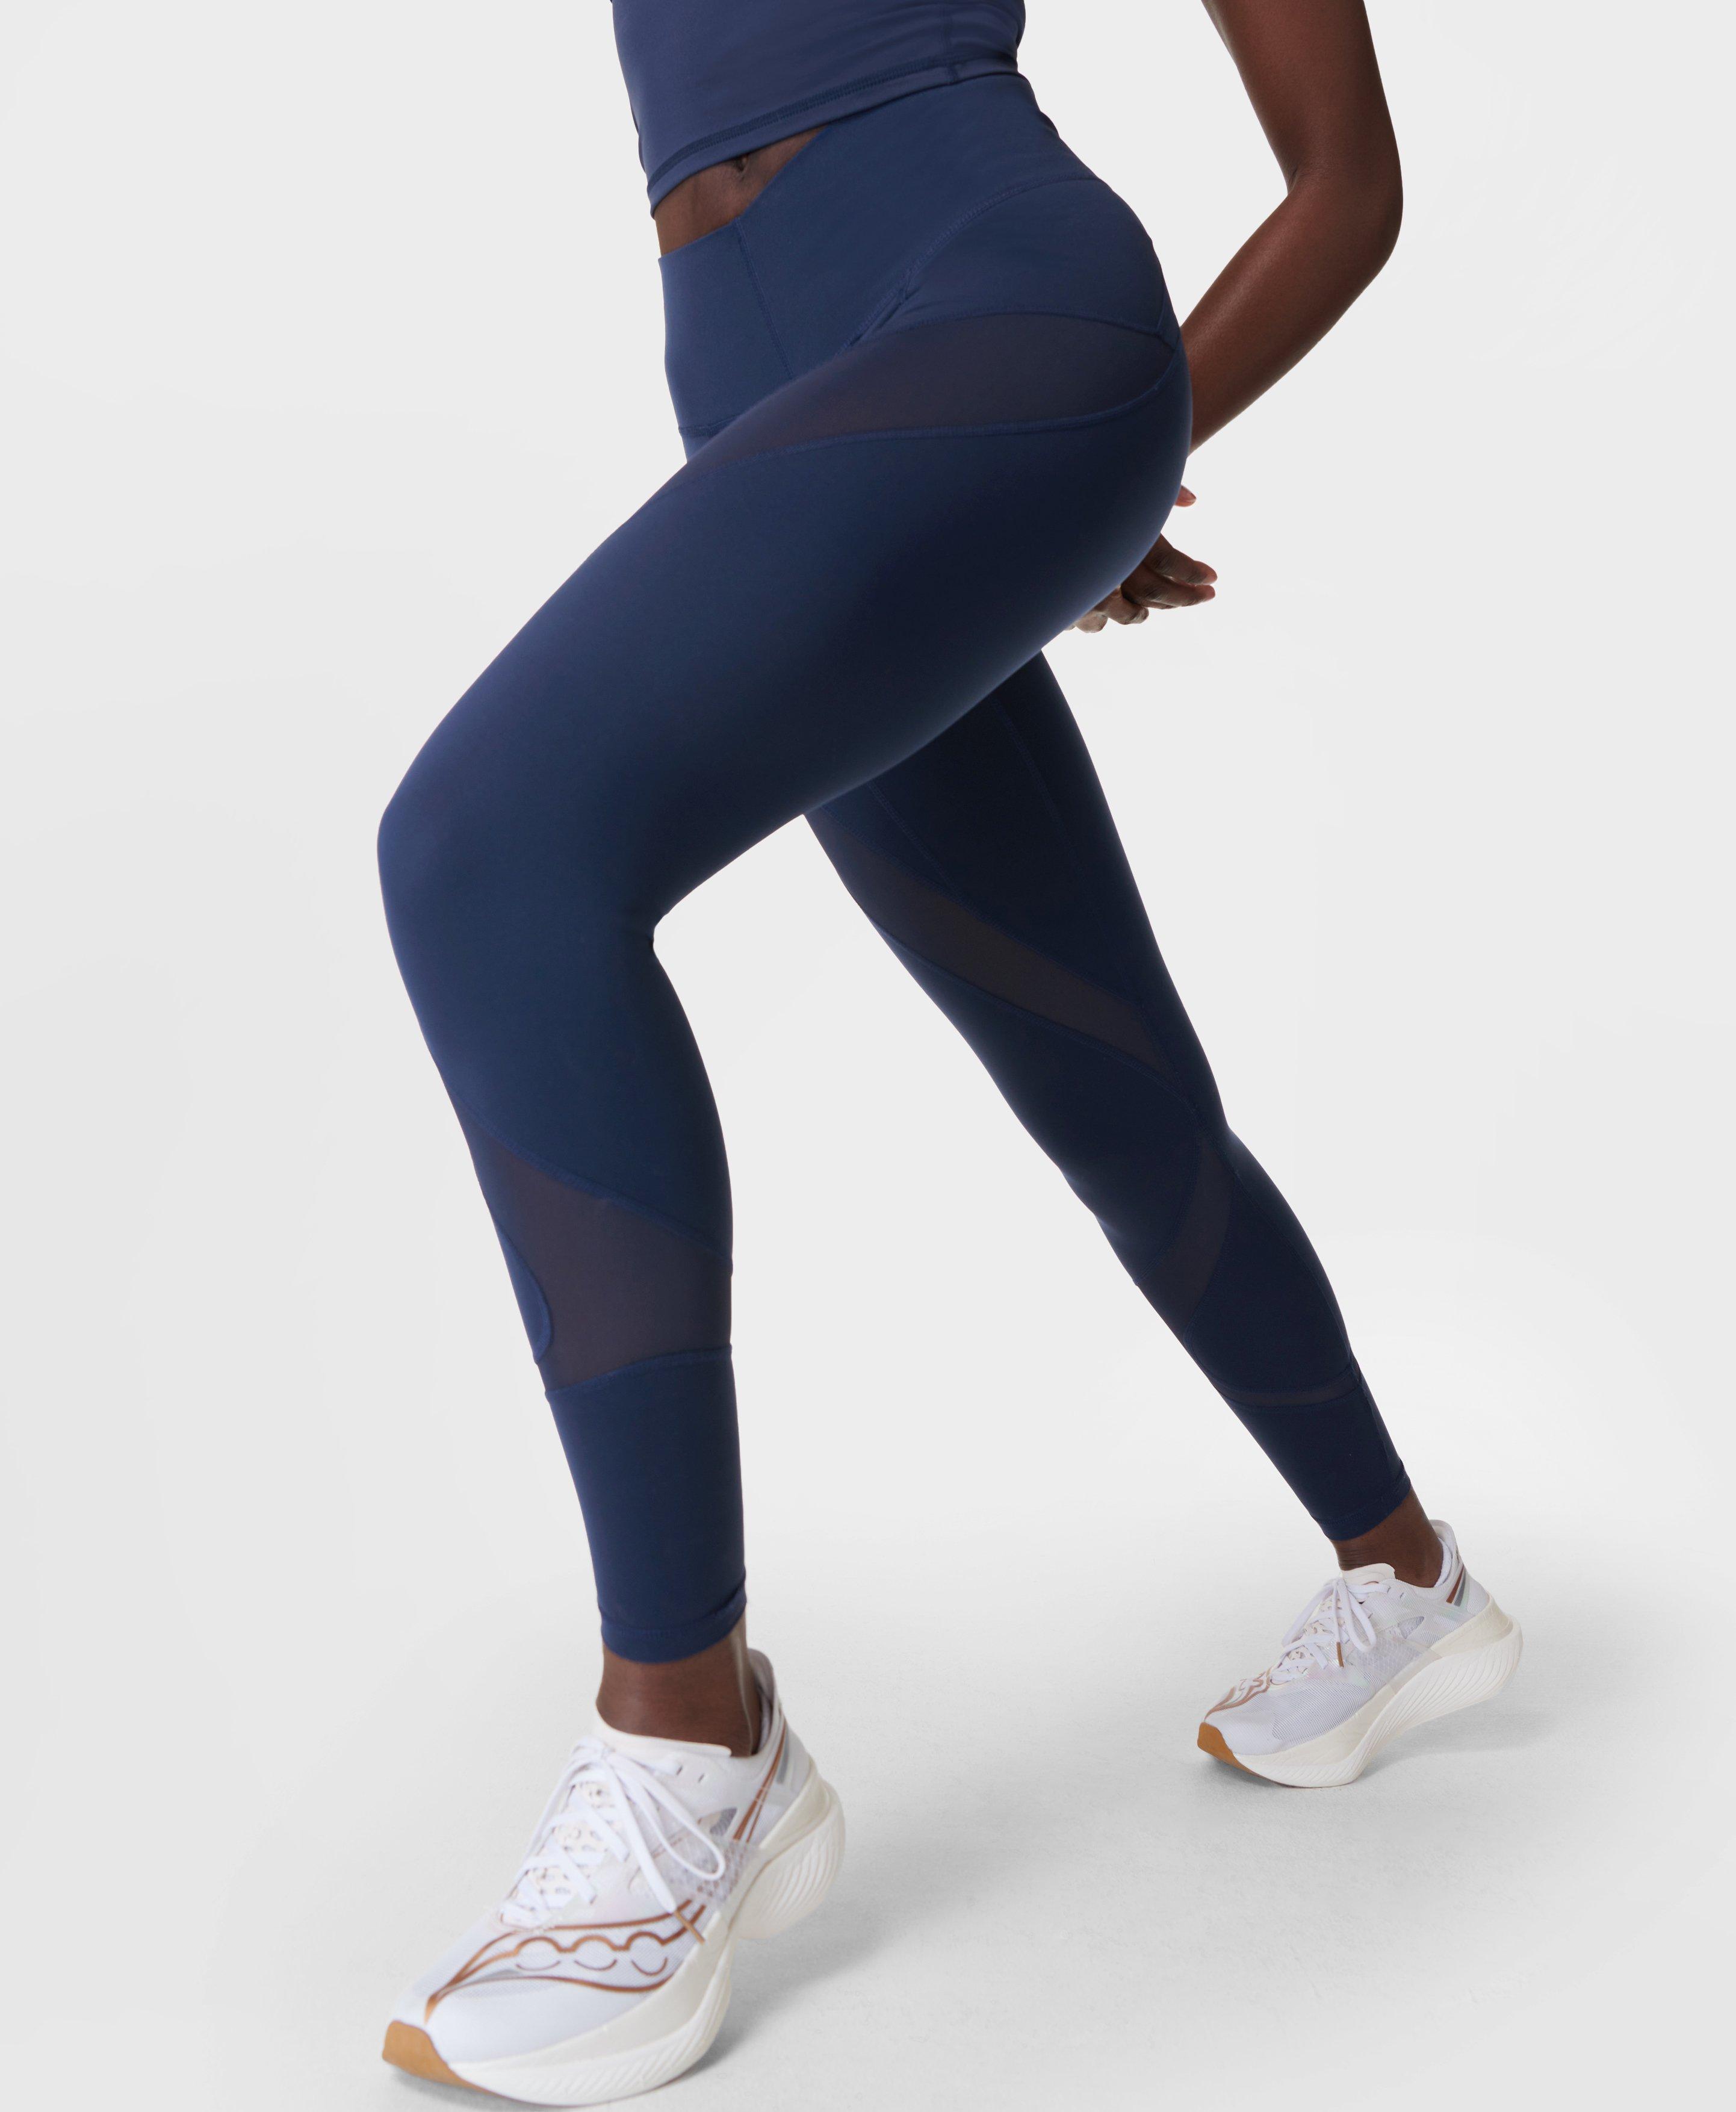 Power 7/8 Gym Colour Curve Leggings - LightningBlue NavyBlue, Women's  Leggings